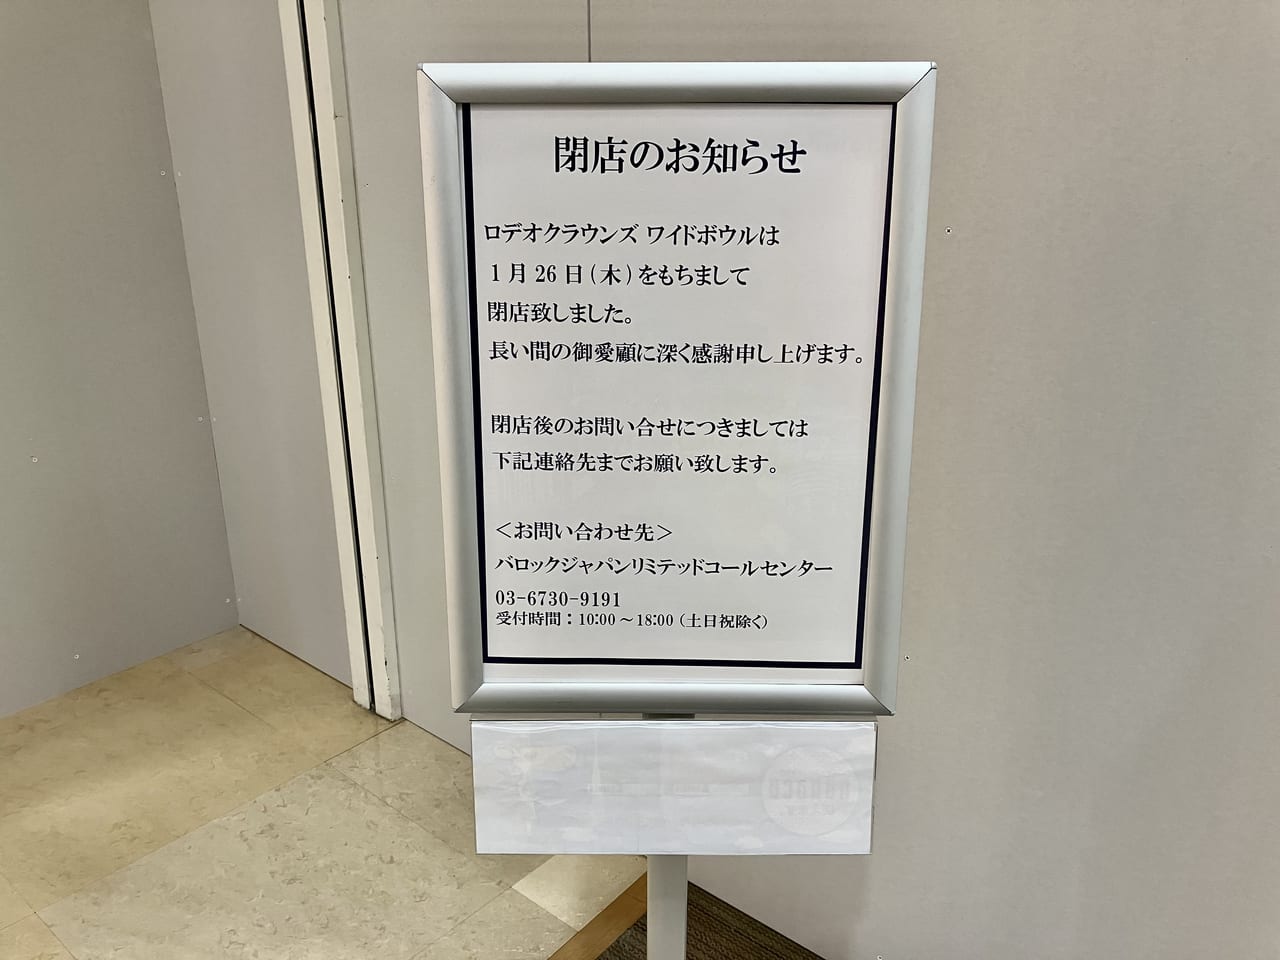 北海道の出店は１店舗のみでした。1月26日にアリオ札幌の「ロデオクラウンズワイドボウル」が閉店。